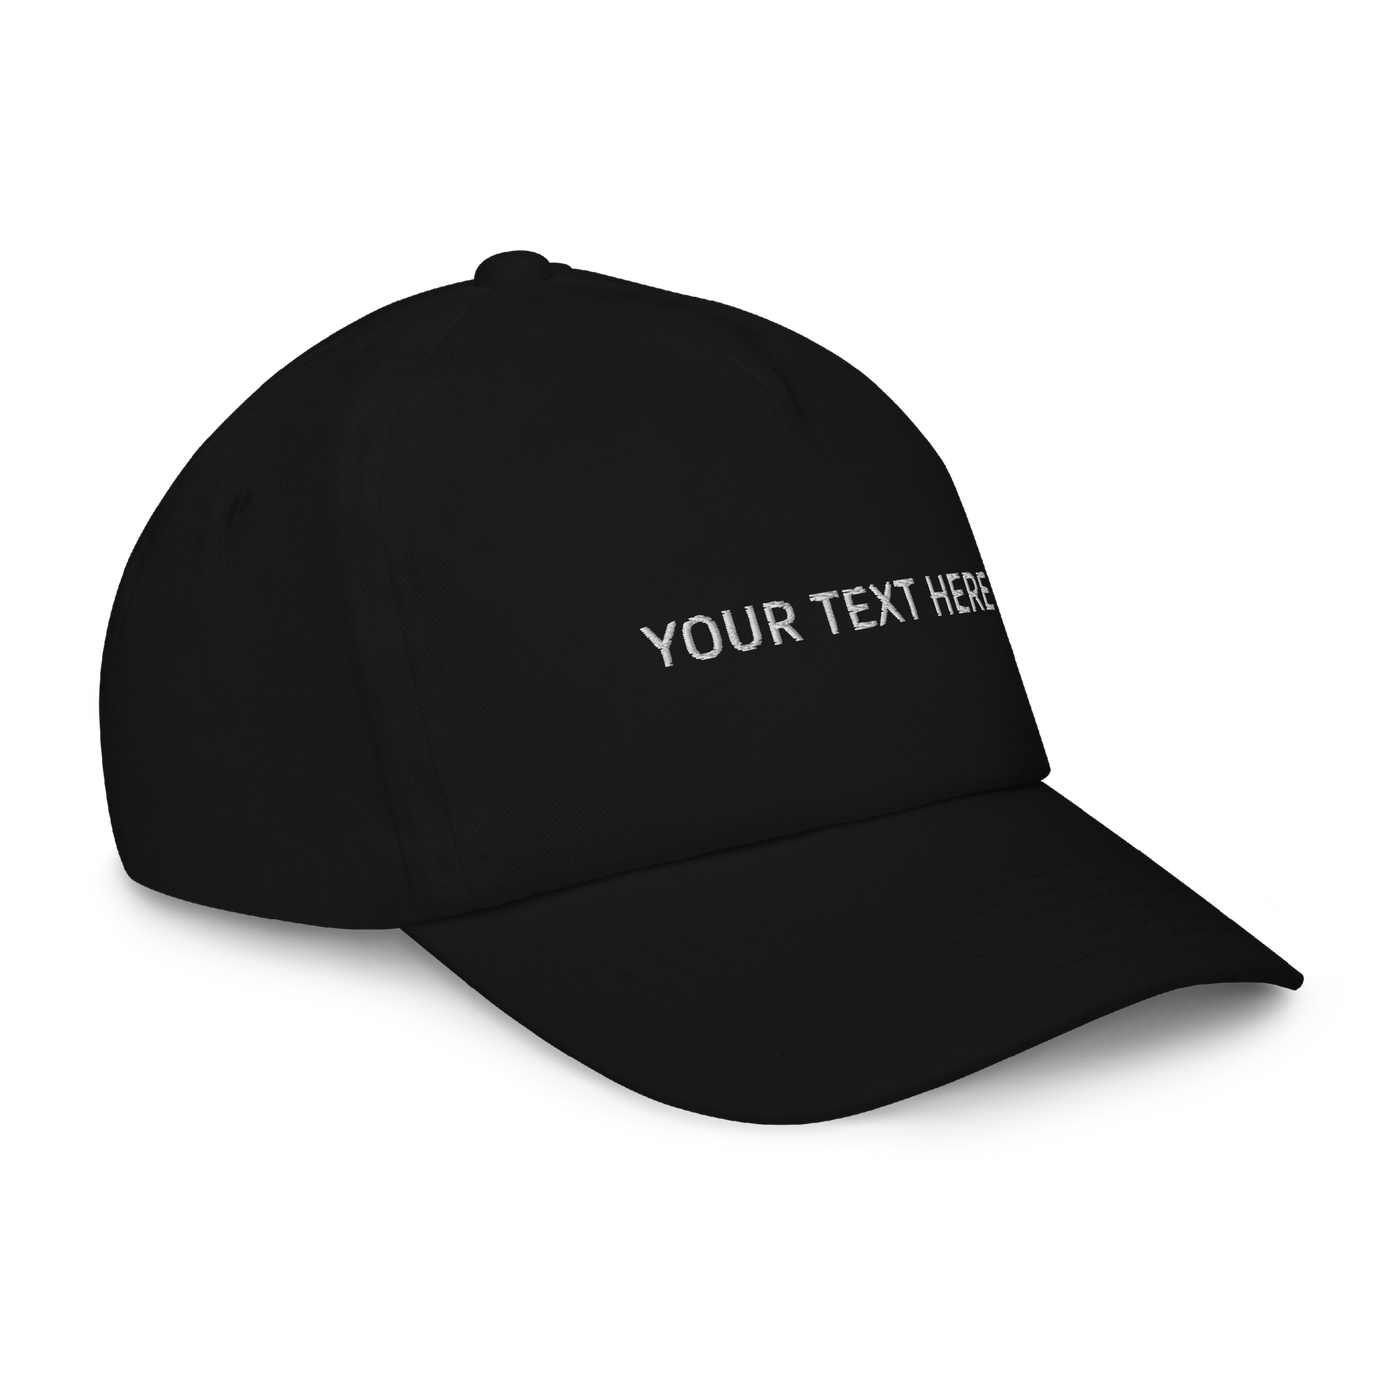 Personalize a Kids cap